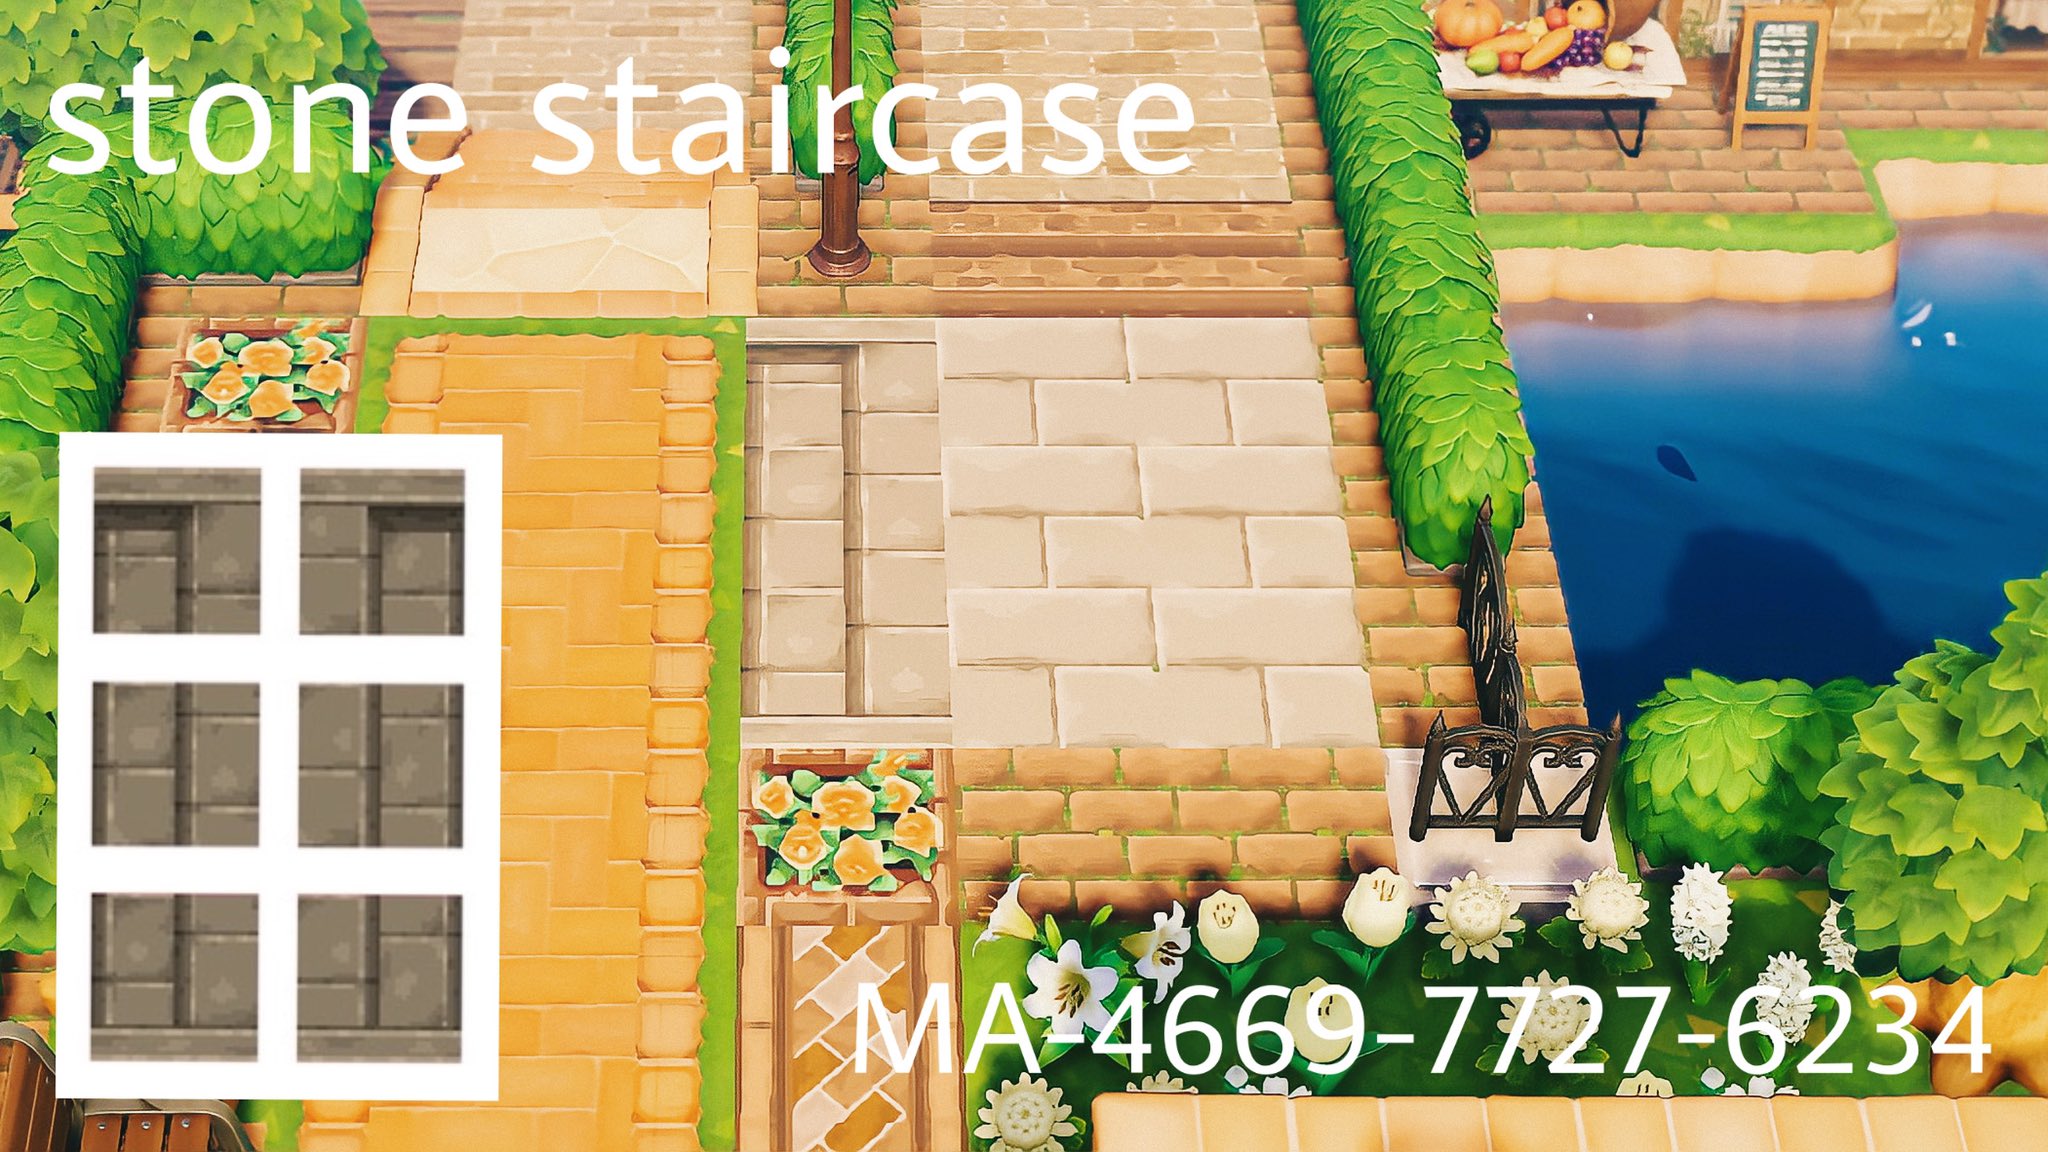 Neko 縦向きの階段が欲しくてかきました ˊ すごくシンプルな石の階段です 端の部分はなくても使えると思います 画像2枚目 真ん中だけ透過してあります ᐟ よければお使いください𓆸 𓊆ma 4669 7727 6234𓊇 あつ森 Acnh マイデザイン あつまれ